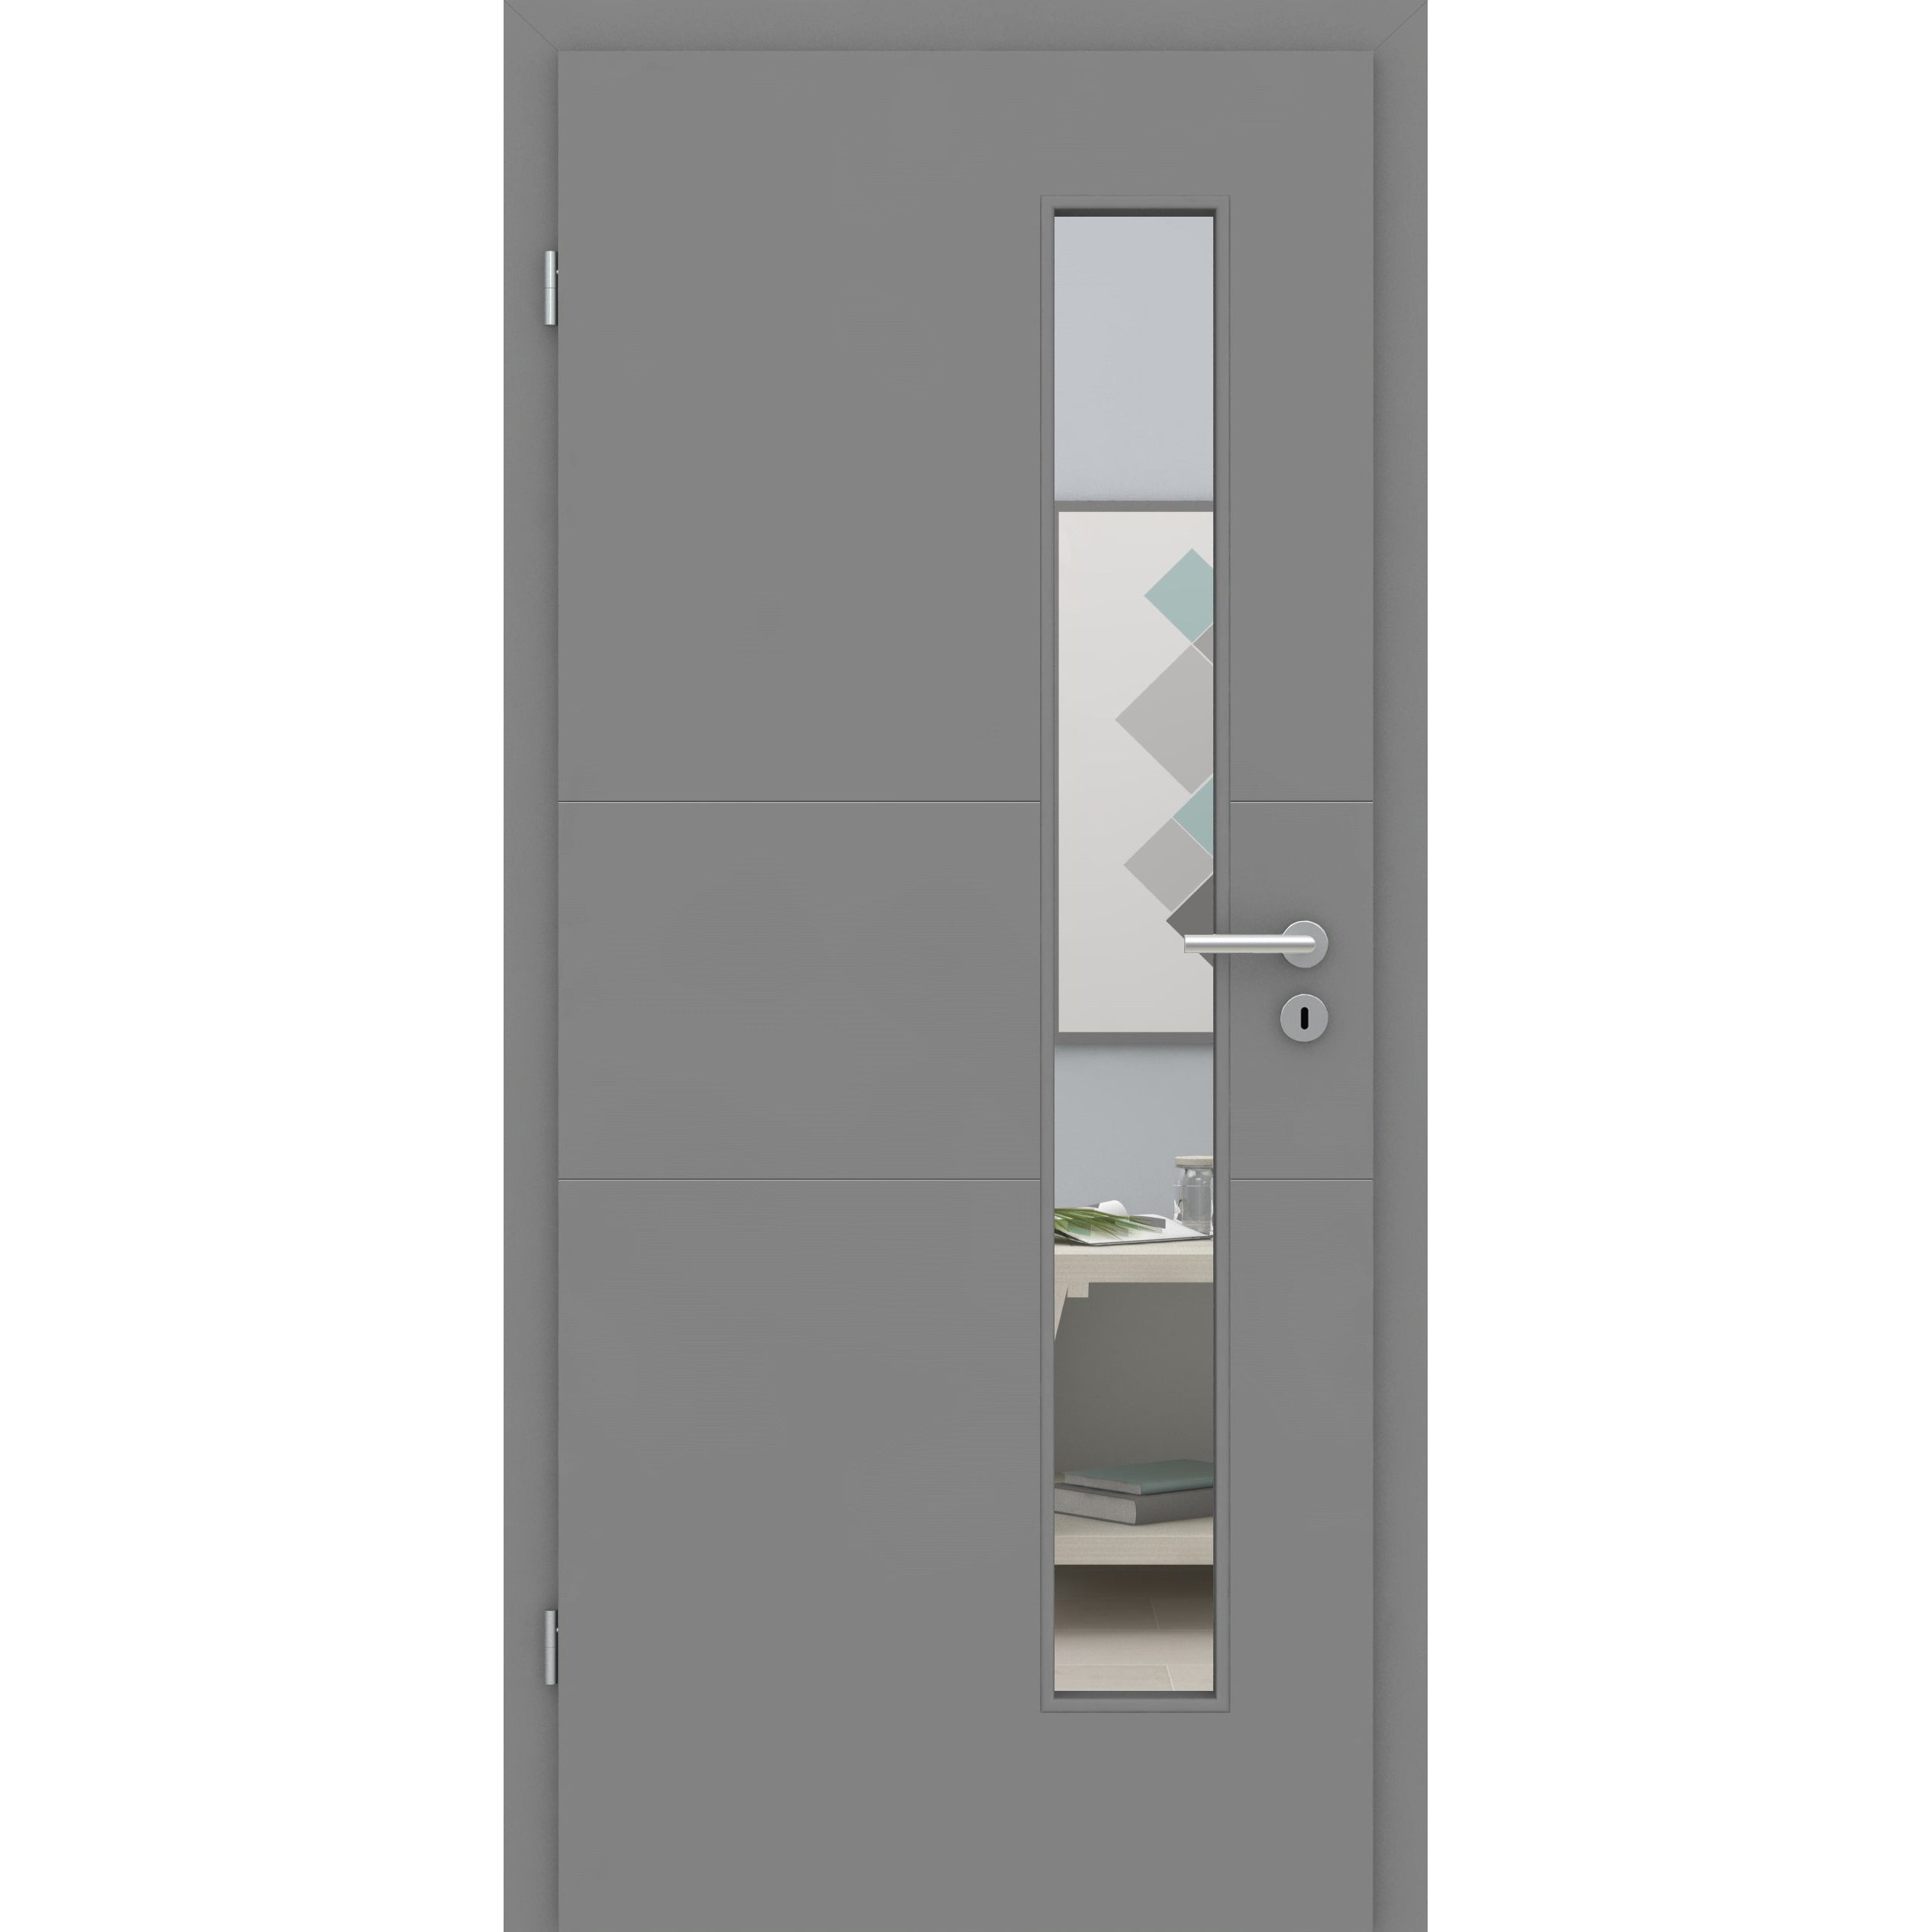 Zimmertür mit Lichtausschnitt grau 2 Rillen quer Designkante - Modell Designtür Q27LAS